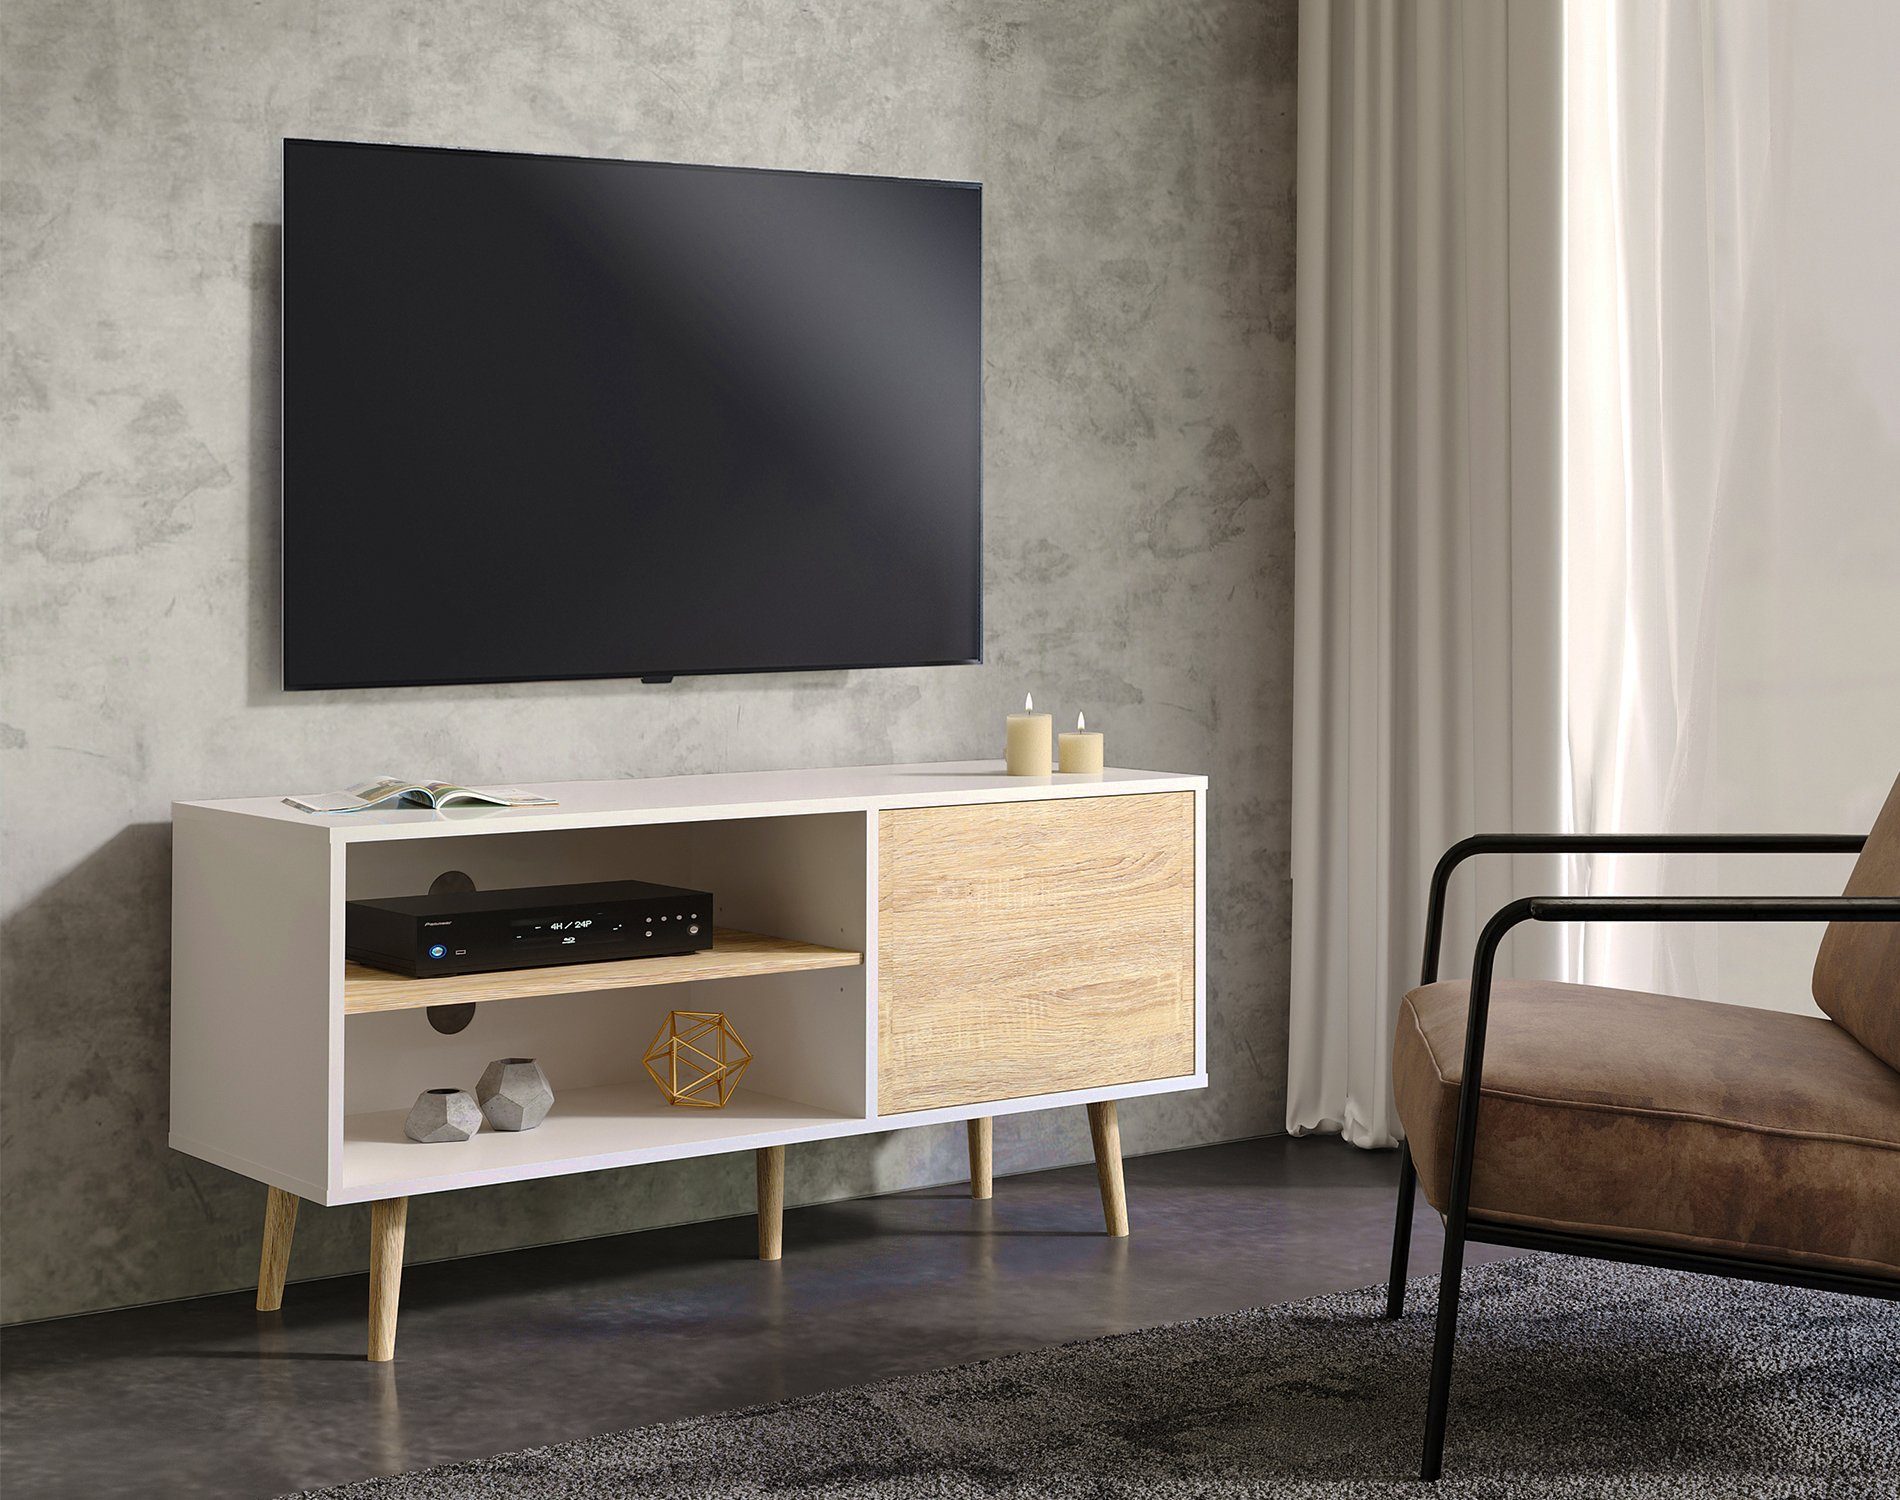 WAMPAT TV-Schrank (Skandinavisch Design TV Lowboard Weiß und Eiche) mit  Türen und Verstellbare Regal online kaufen | OTTO